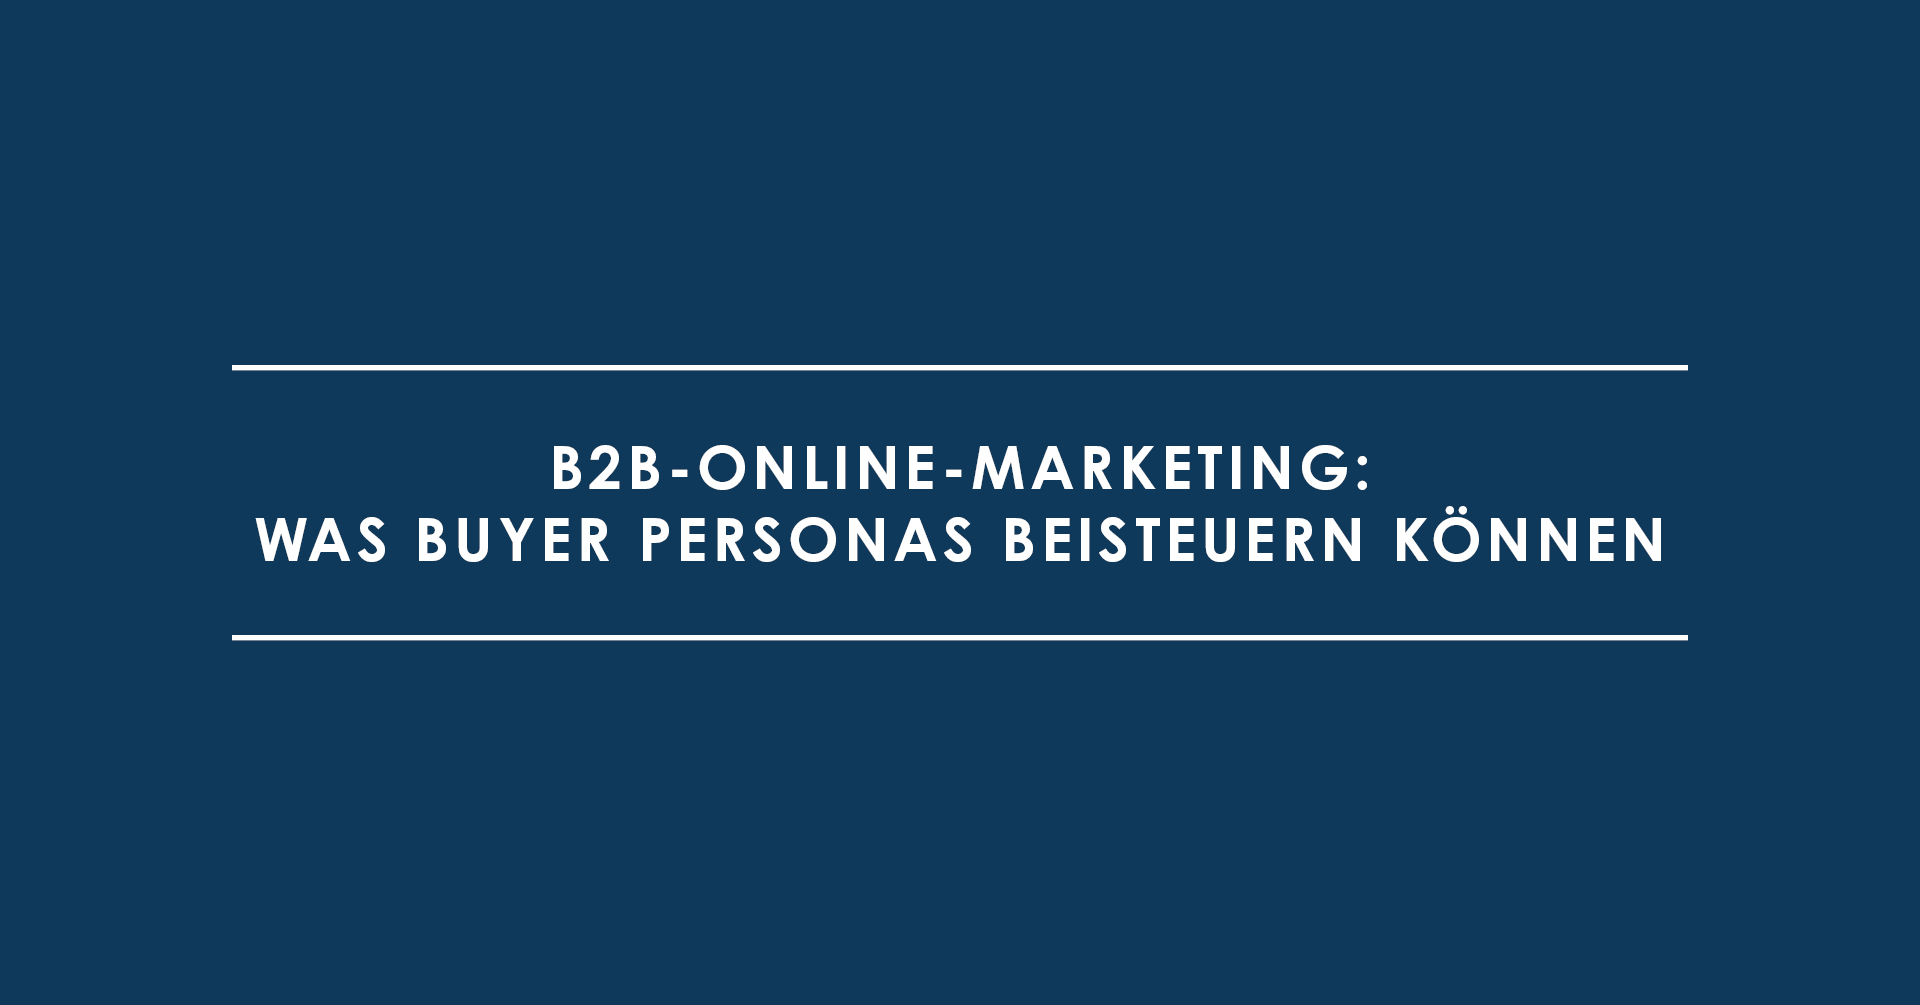 B2B-Online-Marketing: Was Buyer Personas beisteuern können